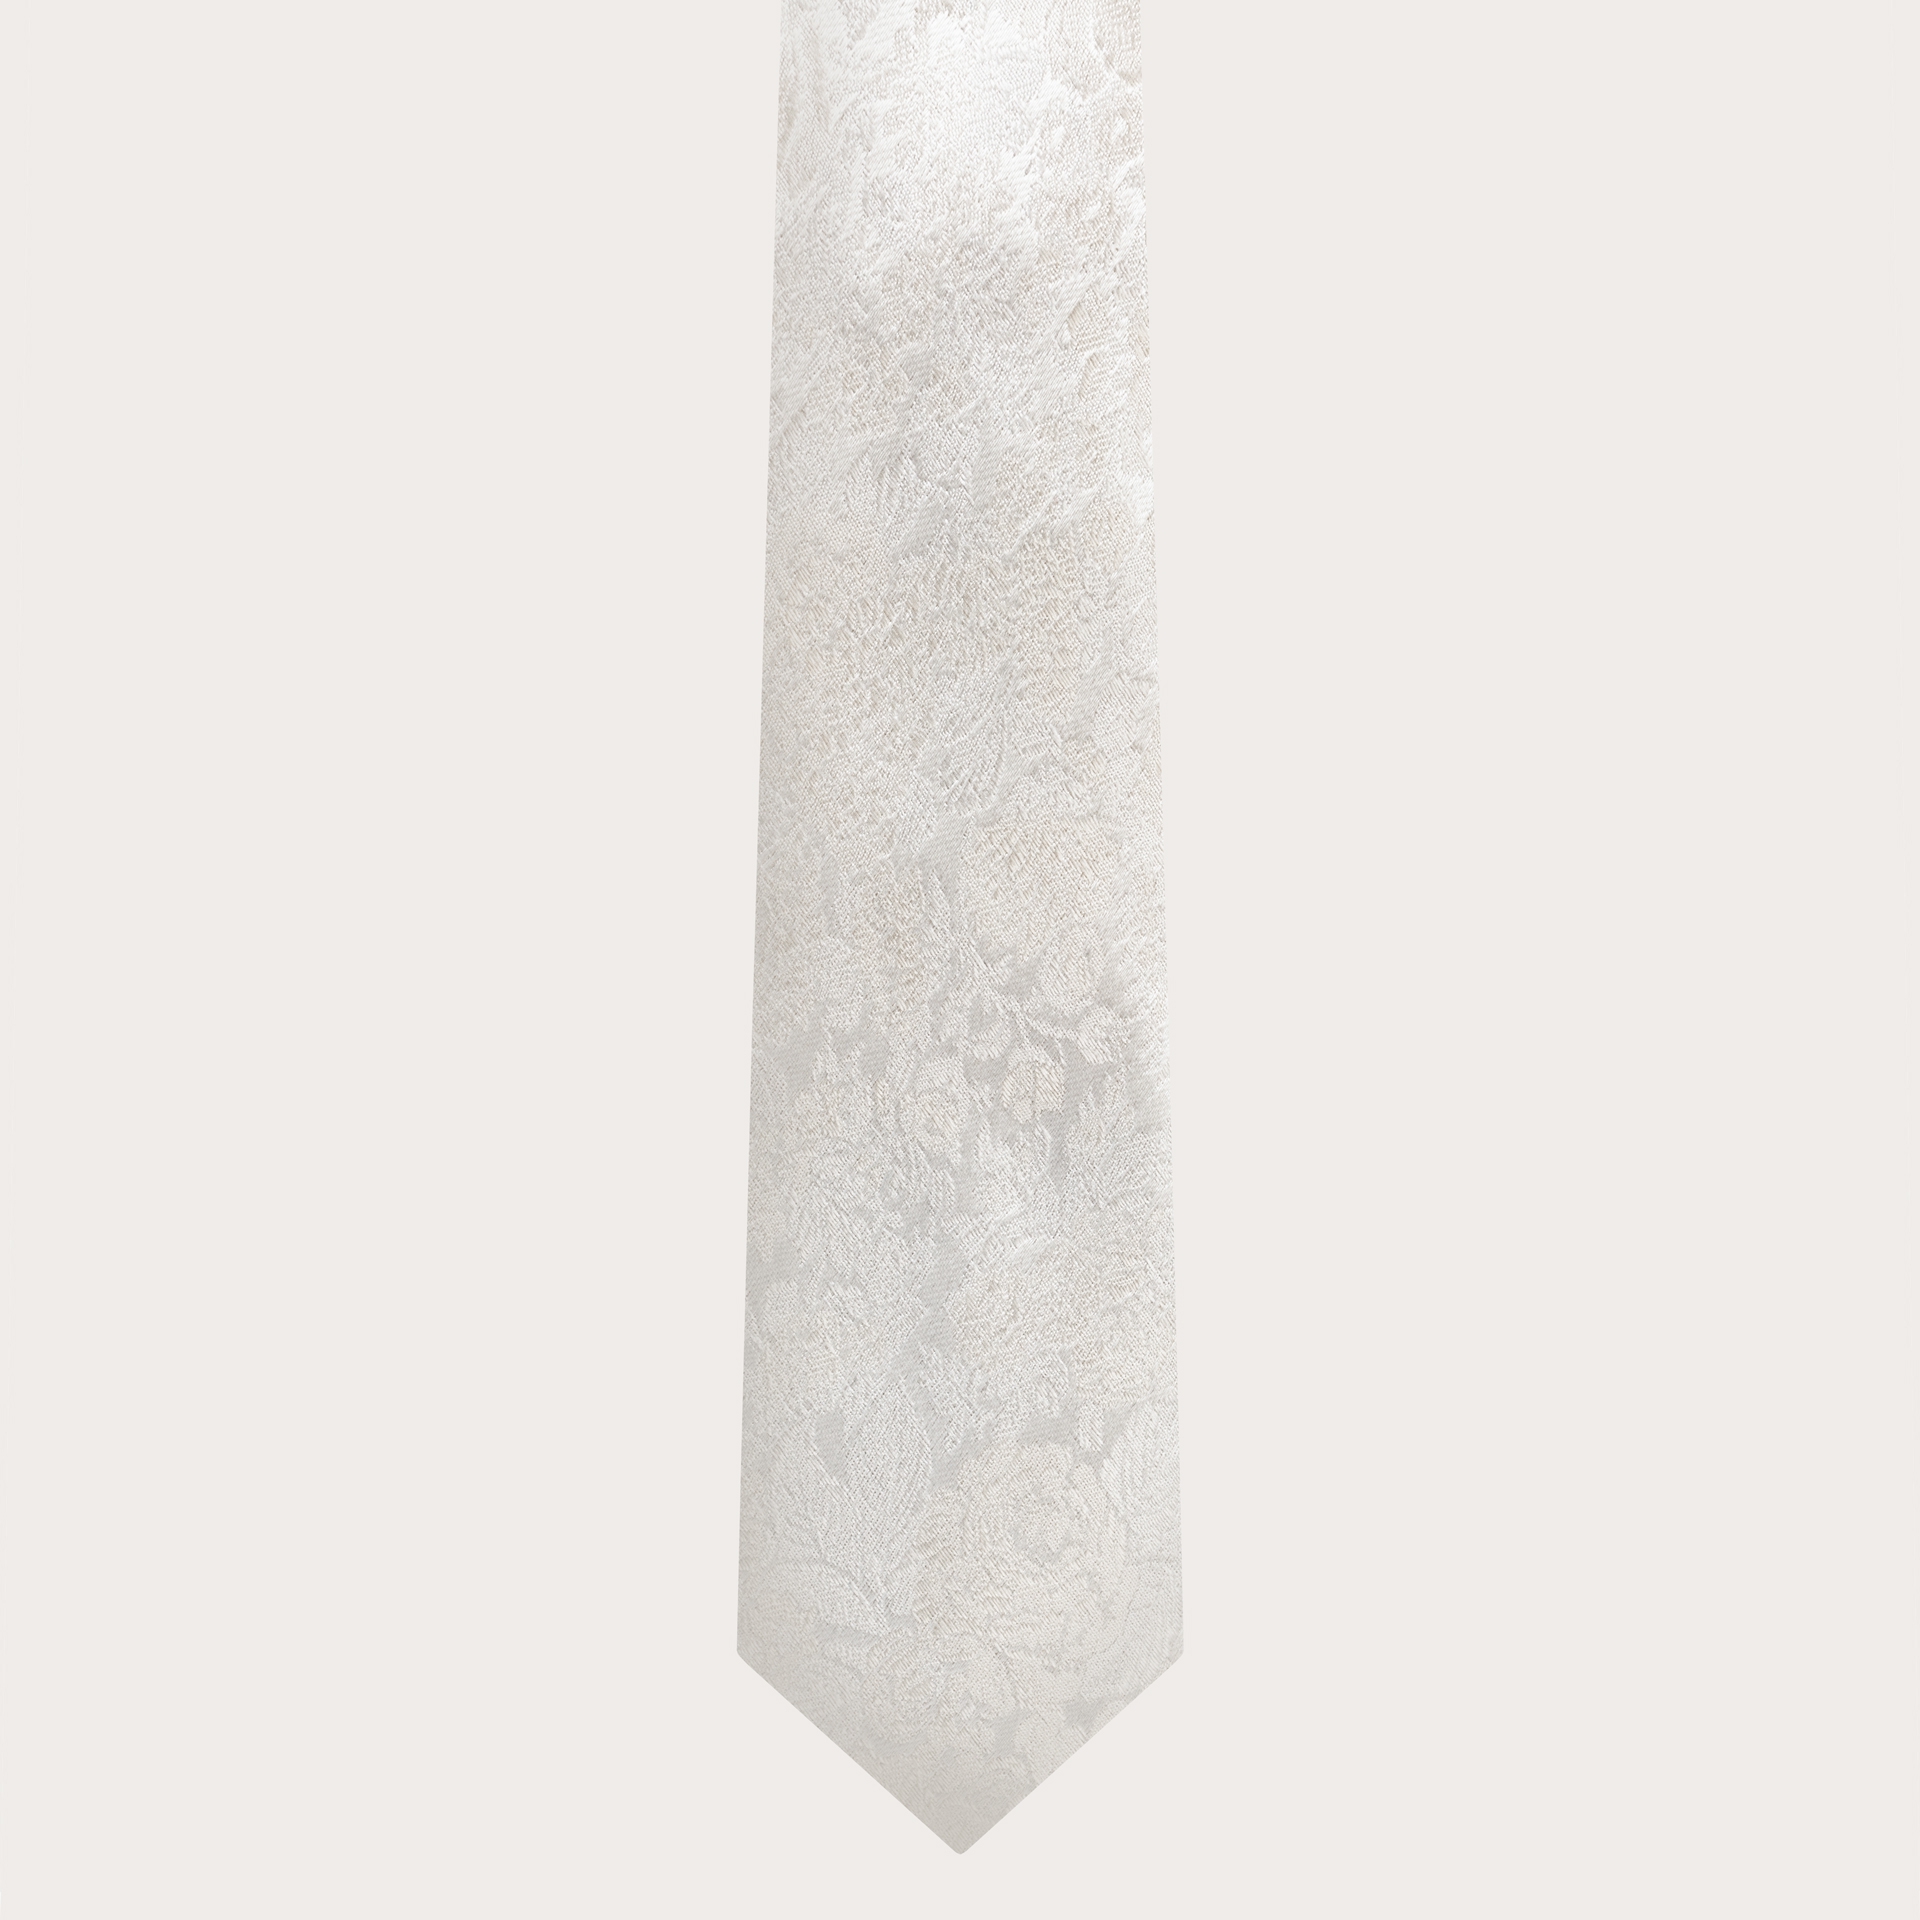 BRUCLE Cravatta matrimonio in raffinata seta jacquard bianca